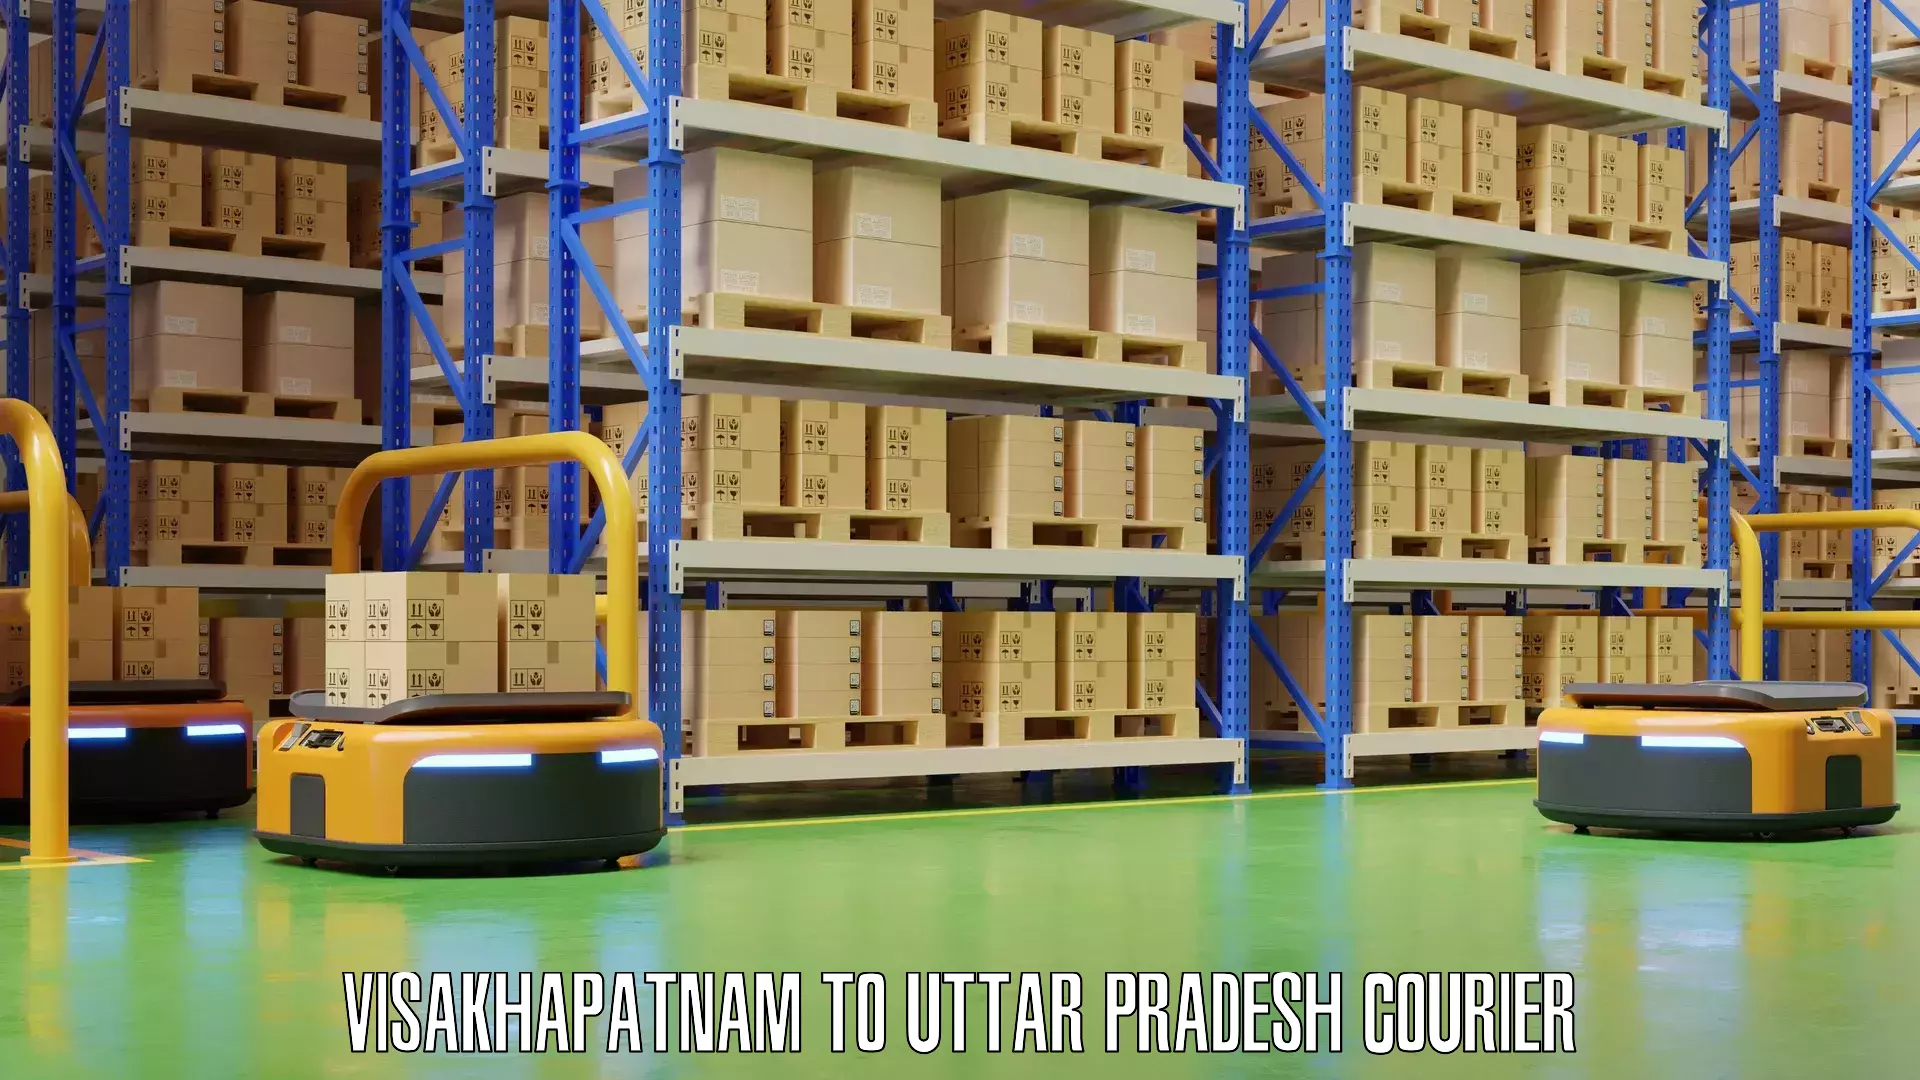 Luggage delivery network Visakhapatnam to Uttar Pradesh